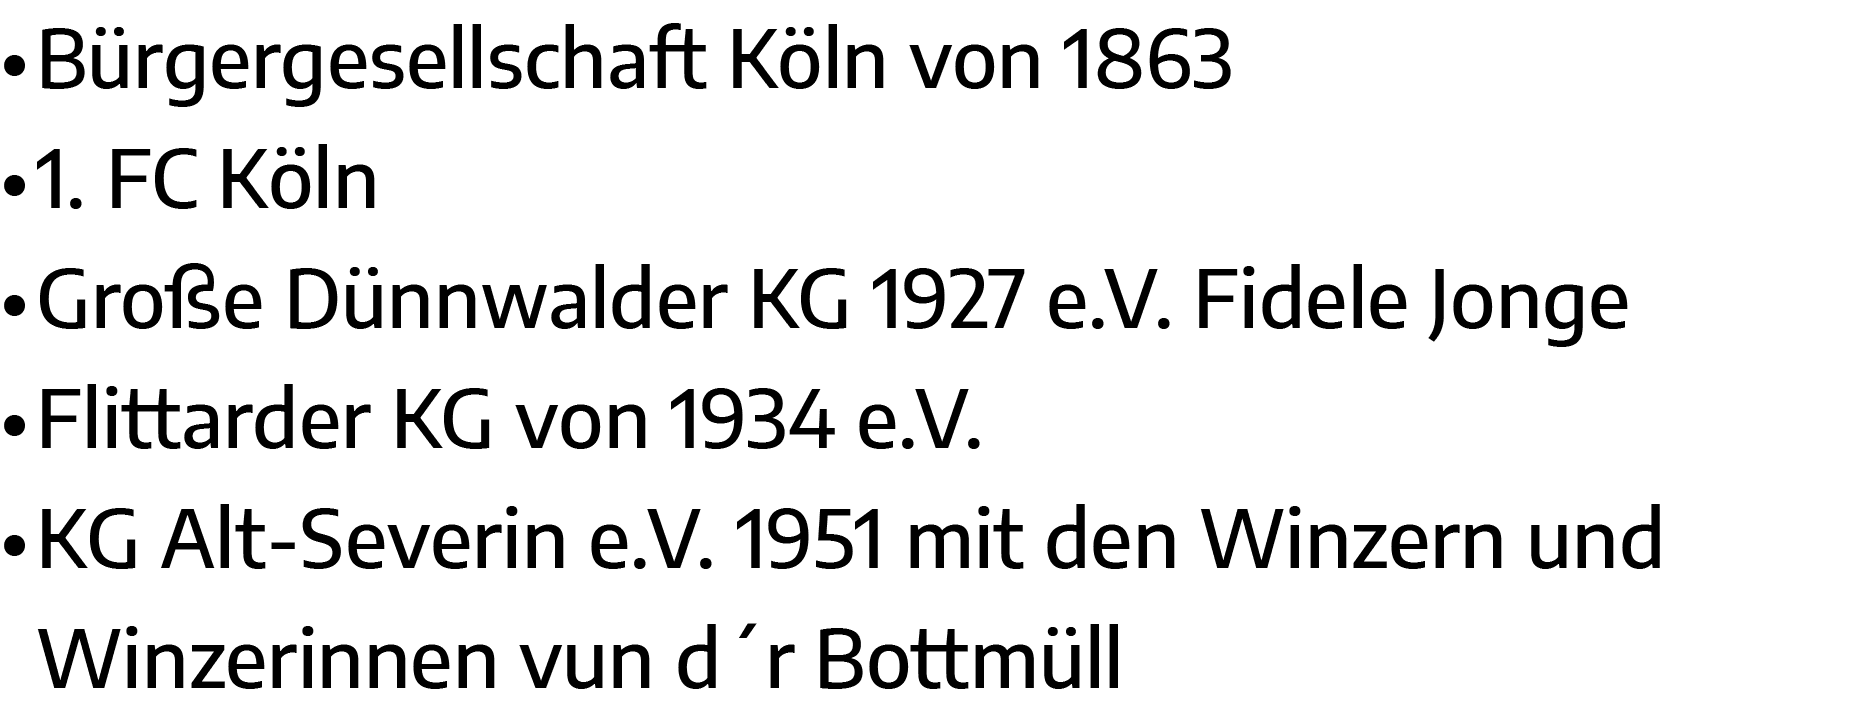   Bürgergesellschaft Köln von 1863   1  FC Köln   Große Dünnwalder KG 1927 e V  Fidele Jonge   Flittarder KG von 1934   